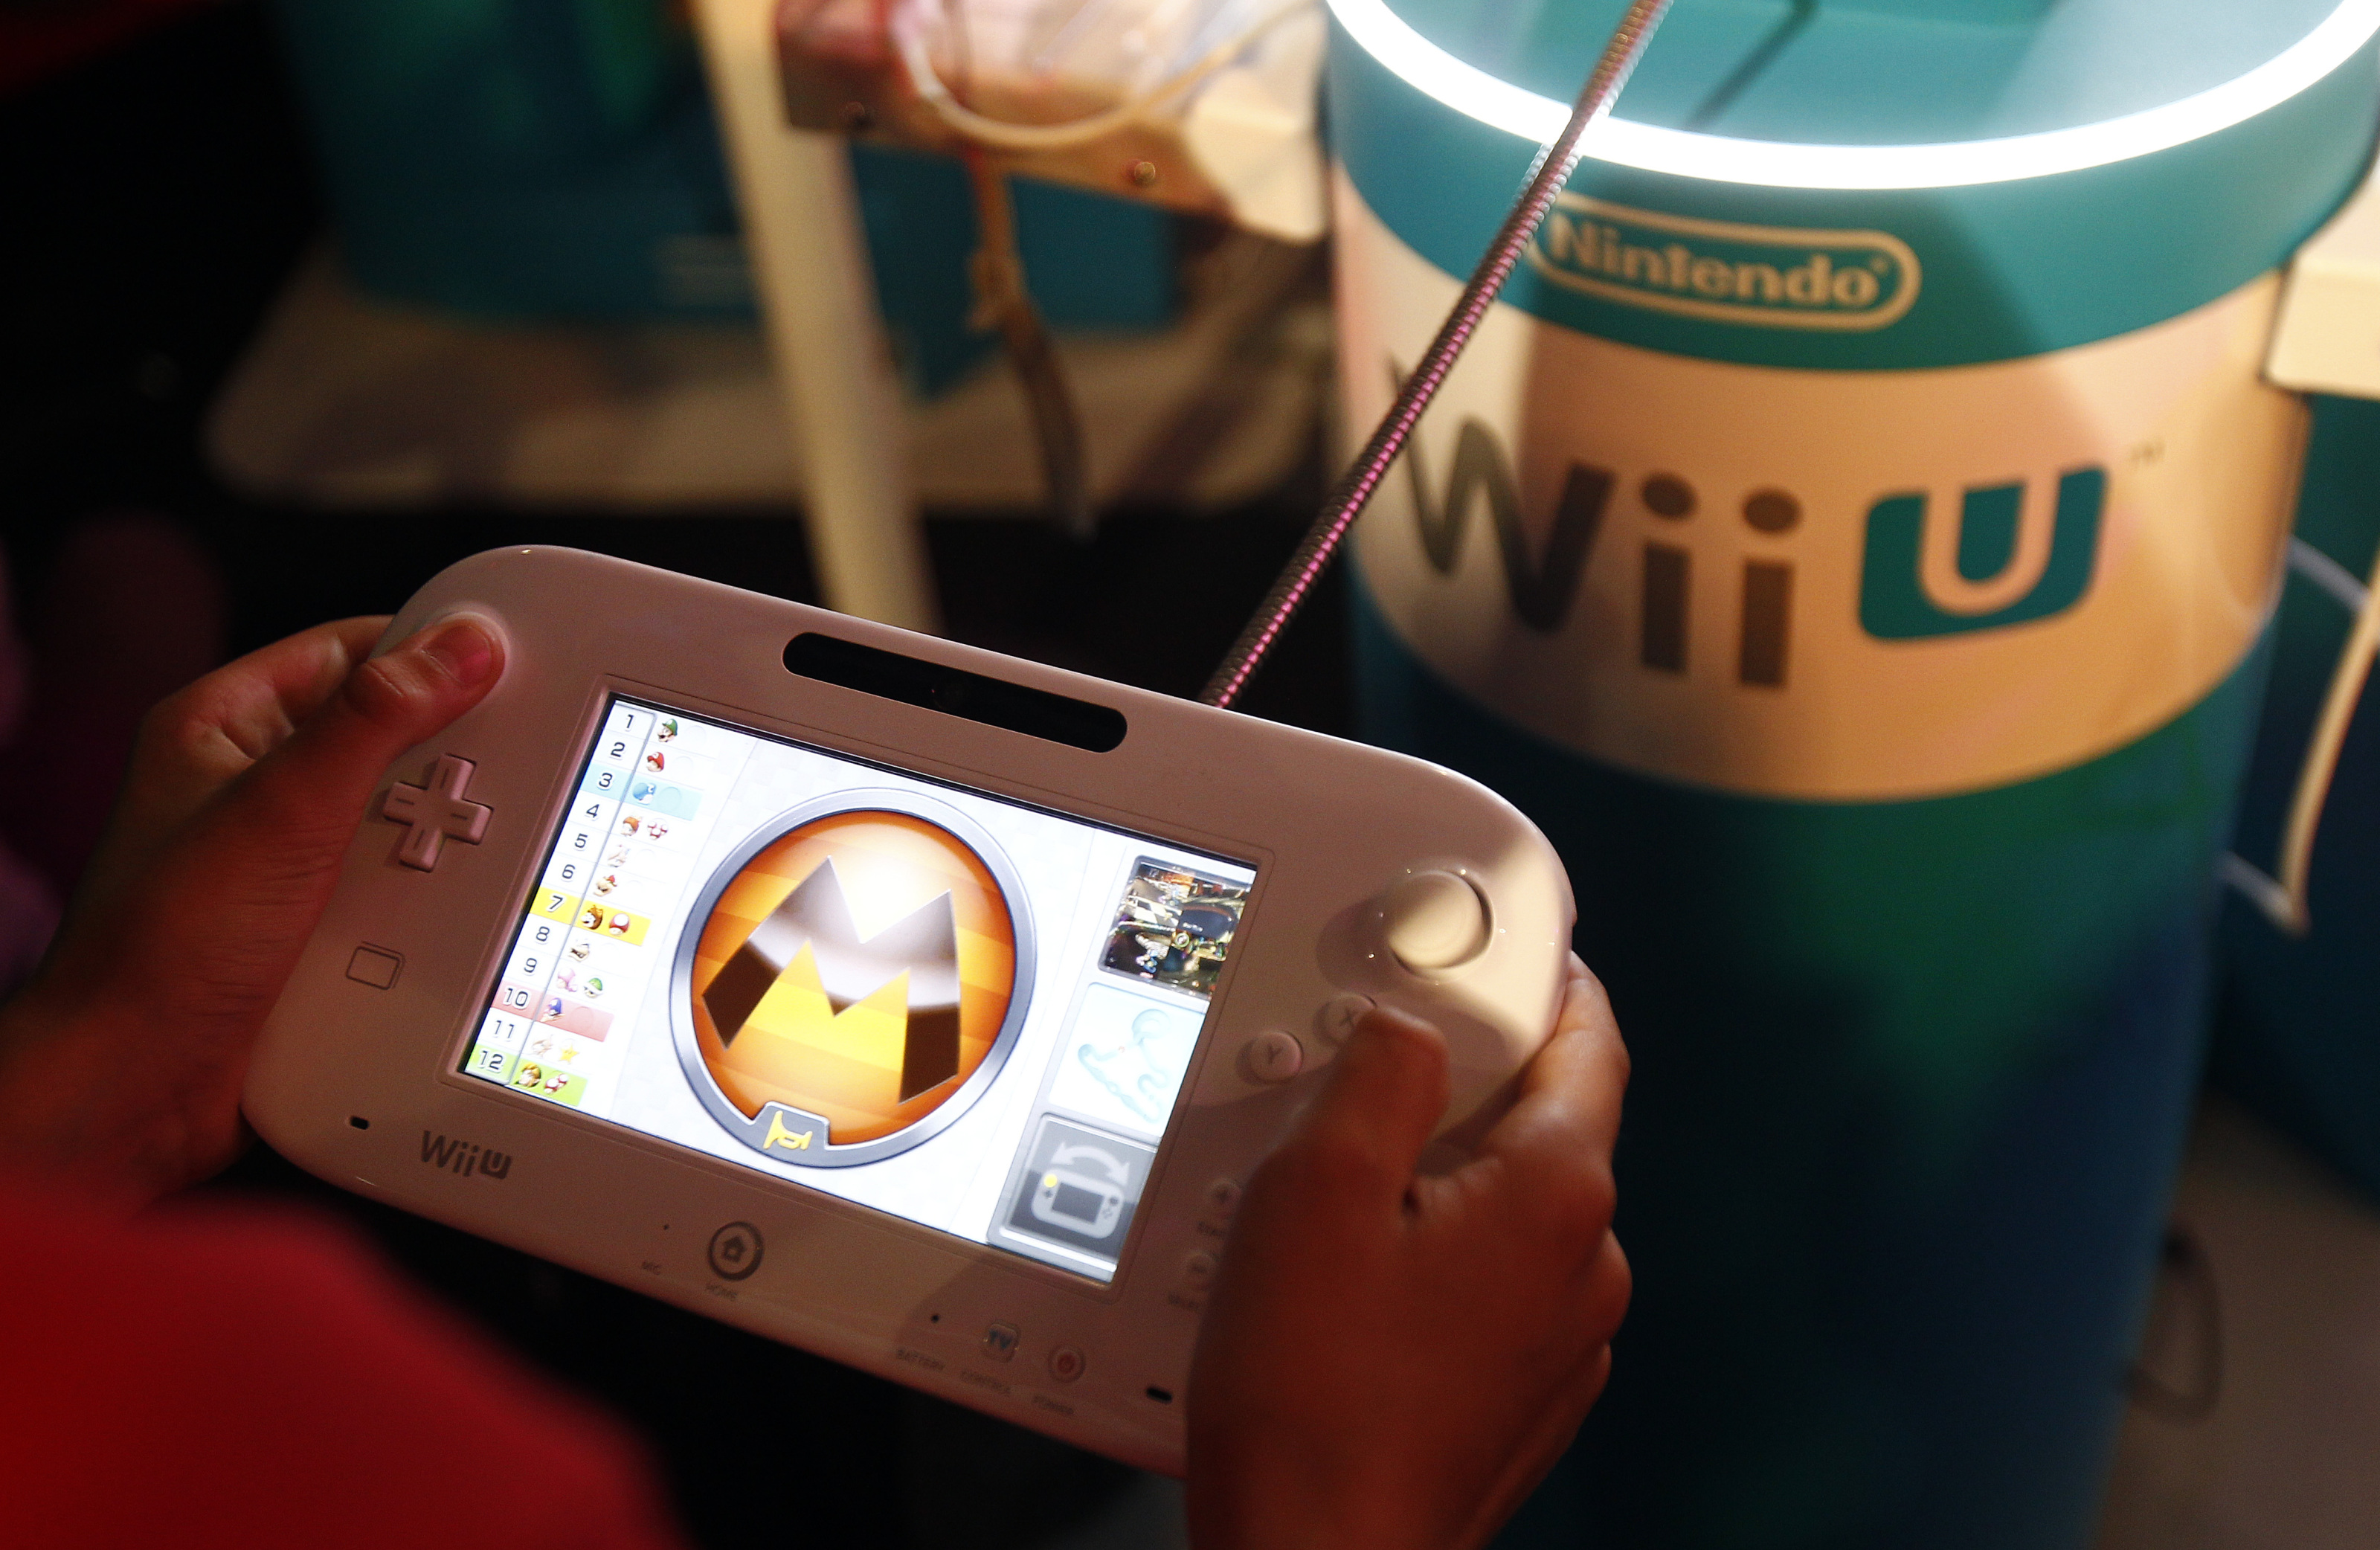 Nintendo announces the closure of the Nintendo 3DS and Wii U eShop